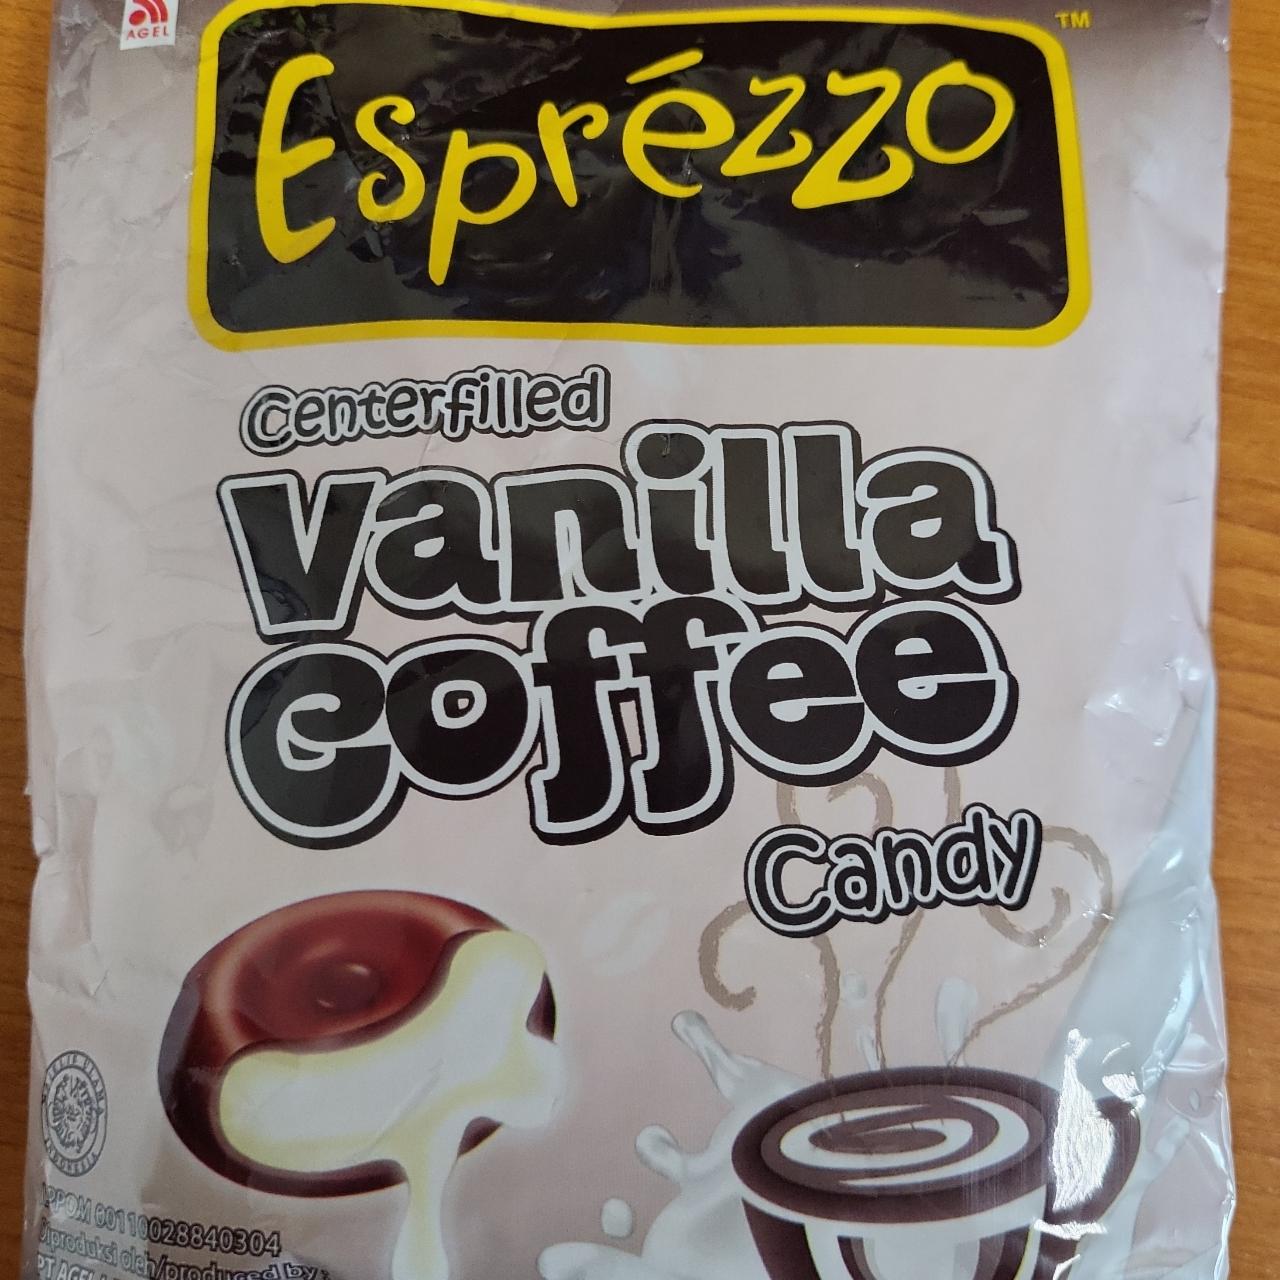 Fotografie - Vanilla coffee candy Esprézzo